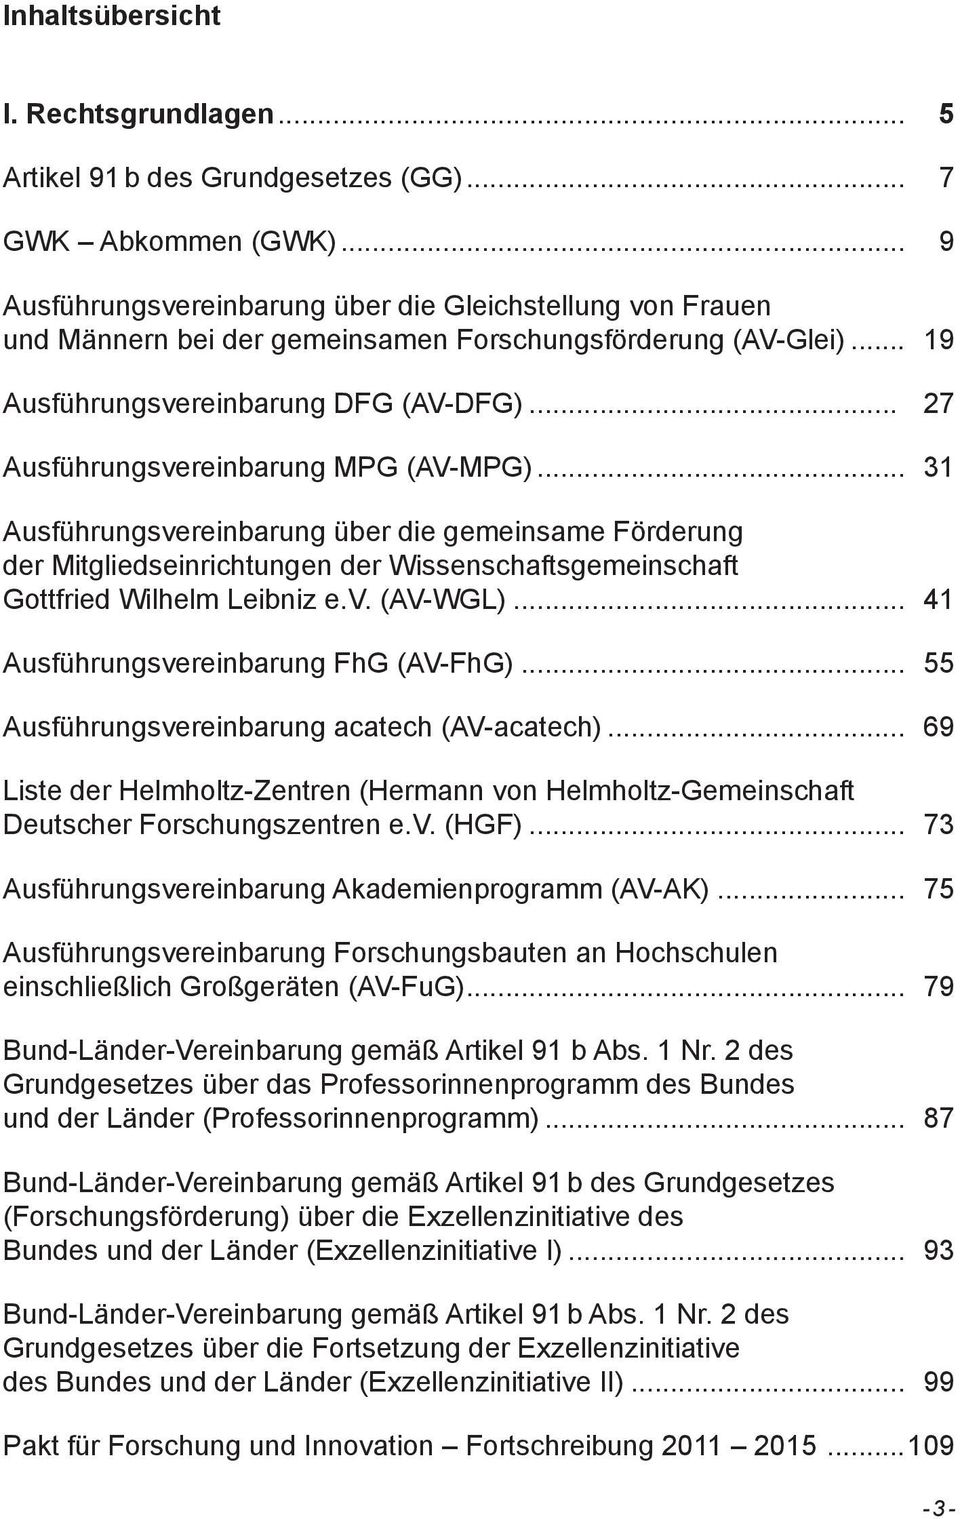 .. 27 Ausführungsvereinbarung MPG (AV-MPG)... 31 Ausführungsvereinbarung über die gemeinsame Förderung der Mitgliedseinrichtungen der Wissenschaftsgemeinschaft Gottfried Wilhelm Leibniz e.v. (AV-WGL).